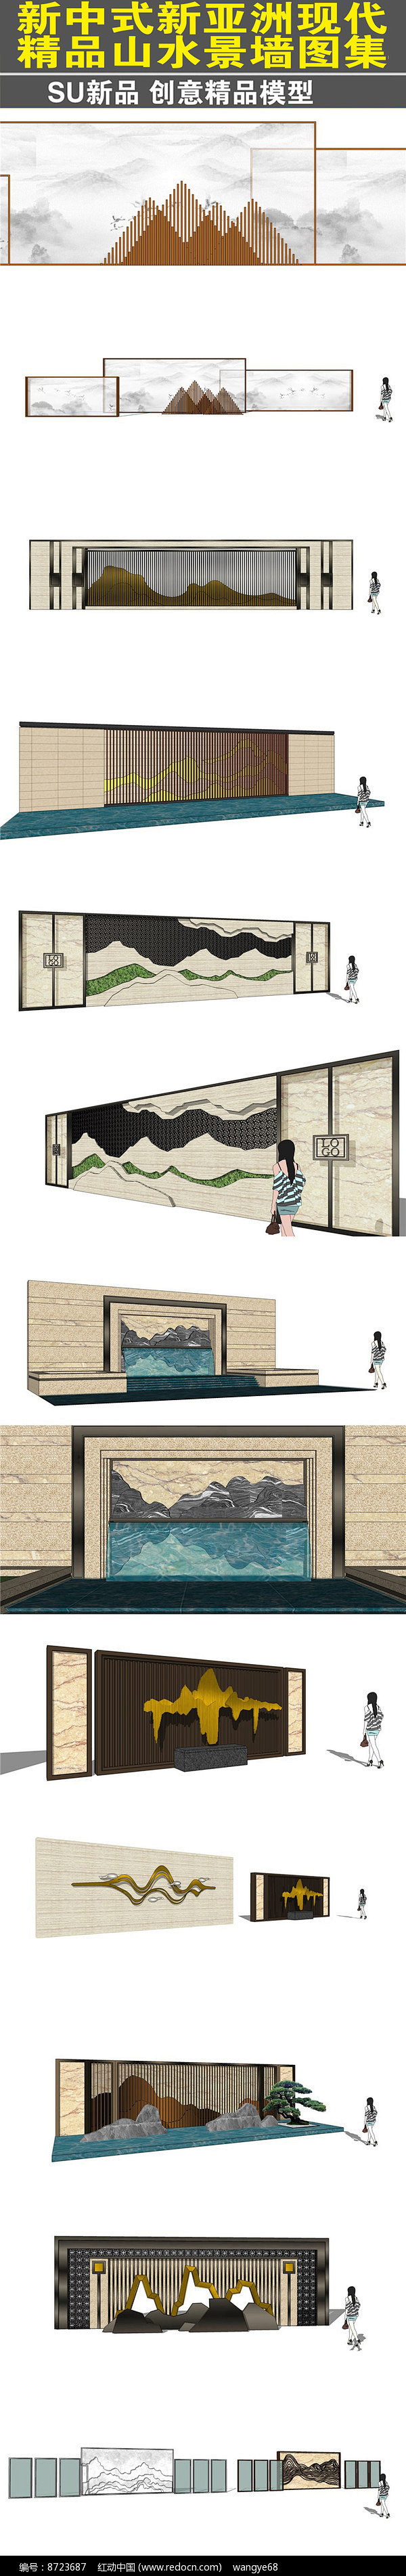 新中式新亚洲现代山水景墙图片